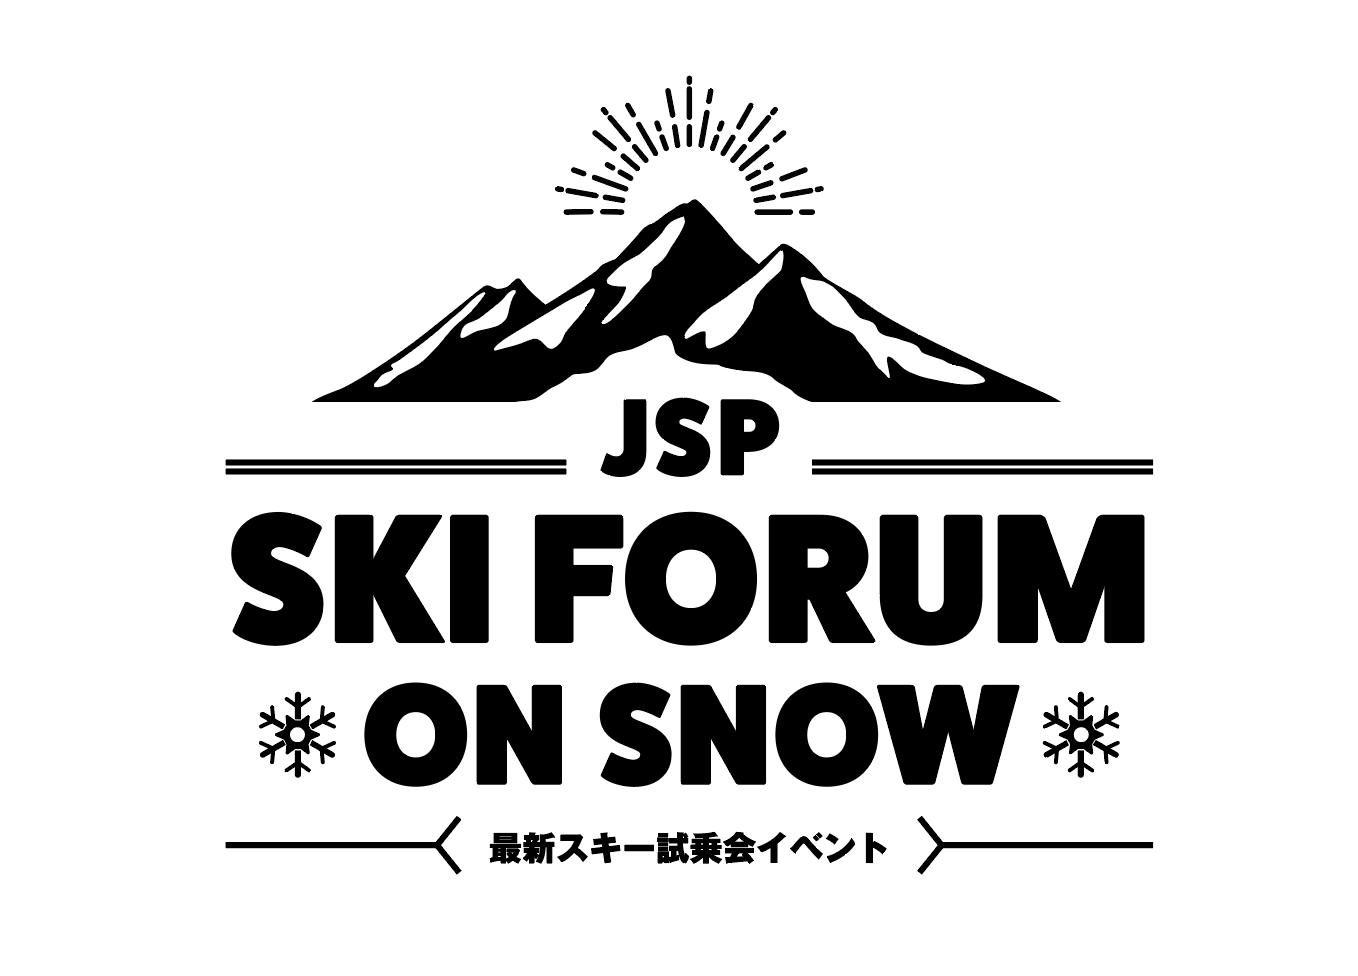 今季は、長野と岐阜の２会場で開催!!! JSP『SKI FORUM ON SNOW』が今季もハイシーズン2月に開催！エントリー開始!!!